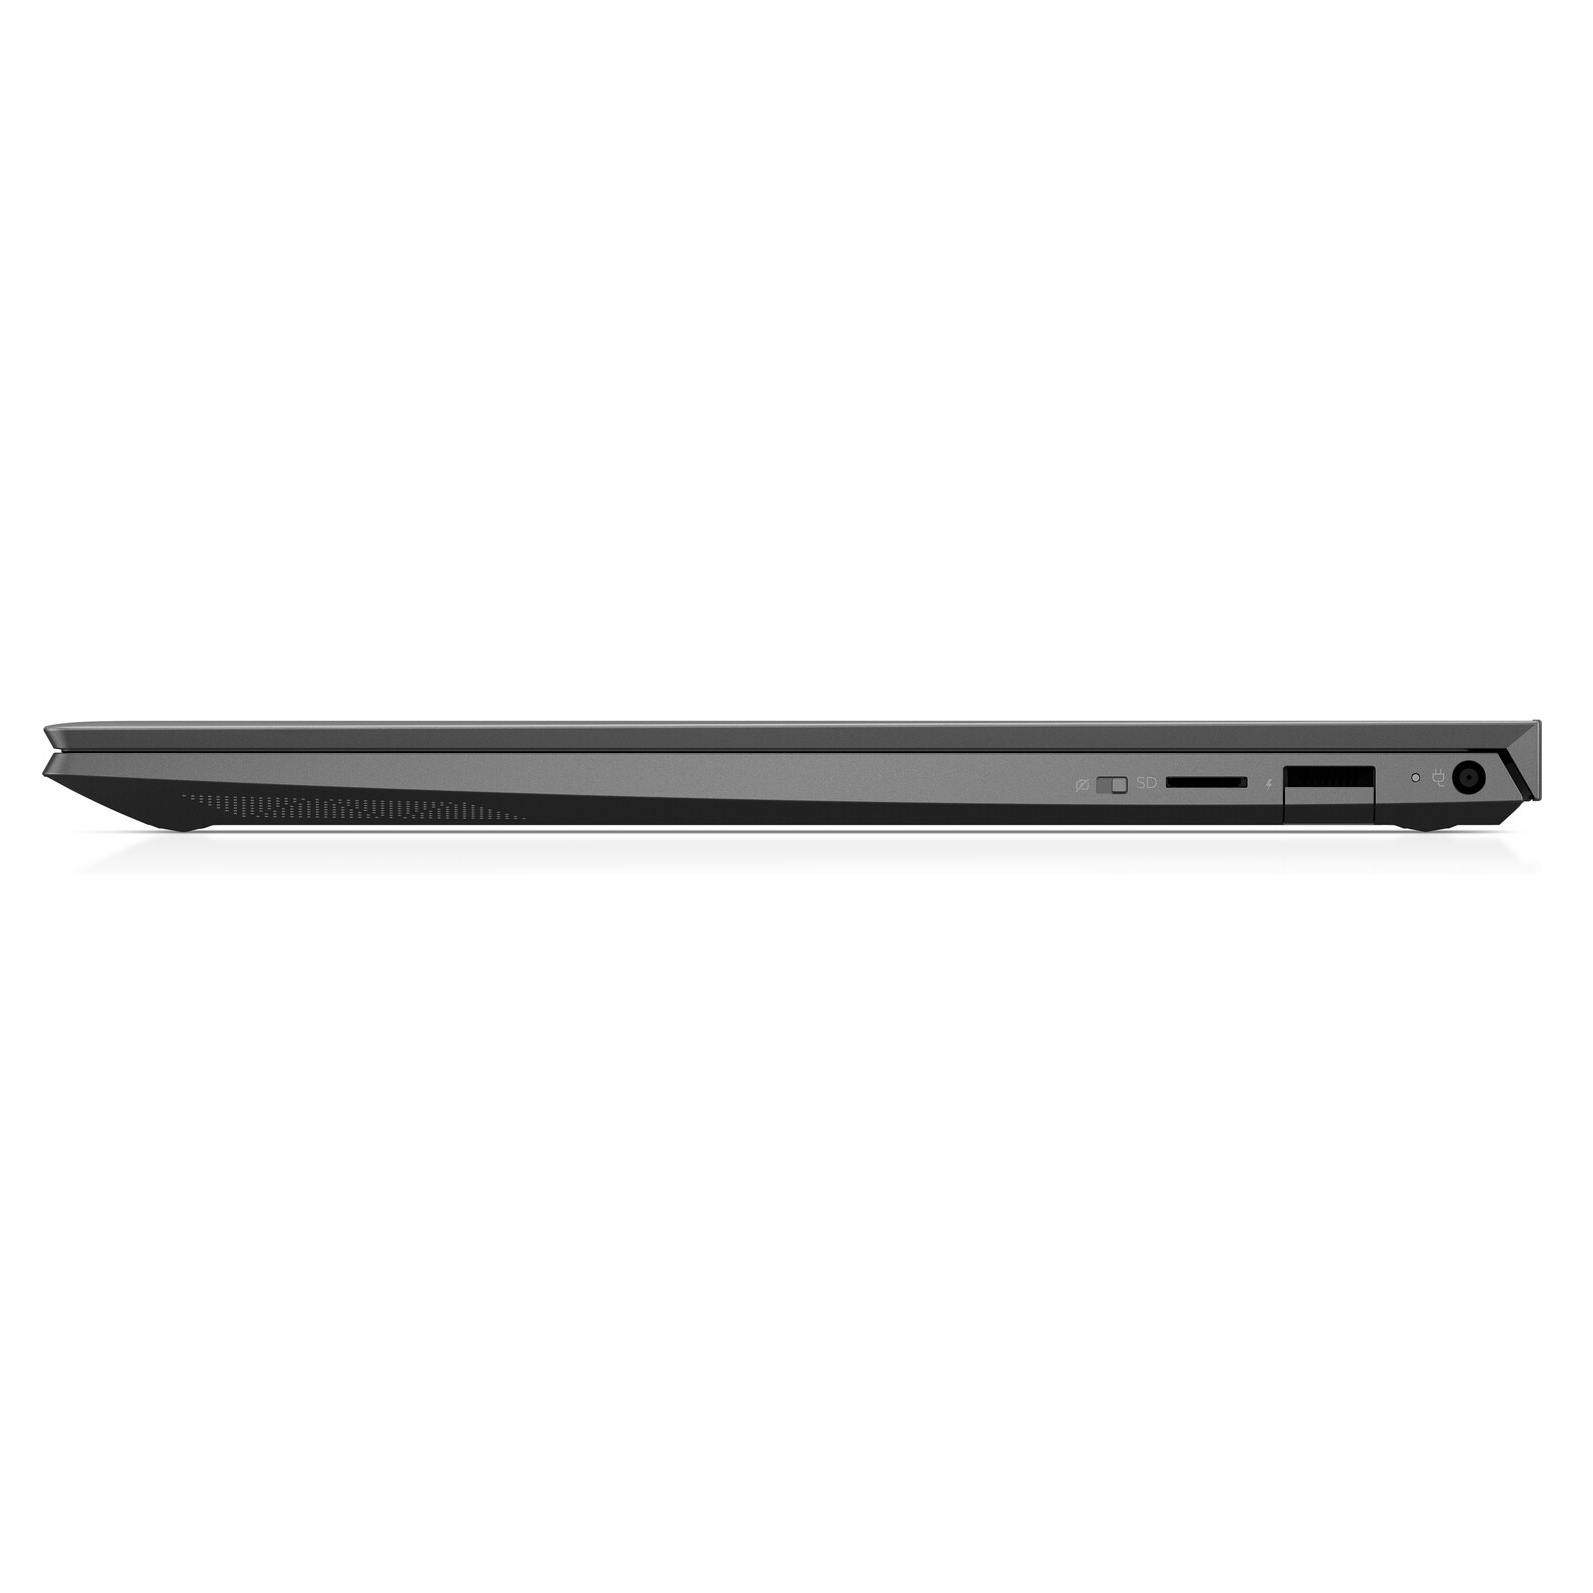 Laptop HP Envy 13 AQ1048T (i5 10210U/8GB RAM/512GB SSD/13.3 inch FHD/FP/Win 10) - 8XS70PA